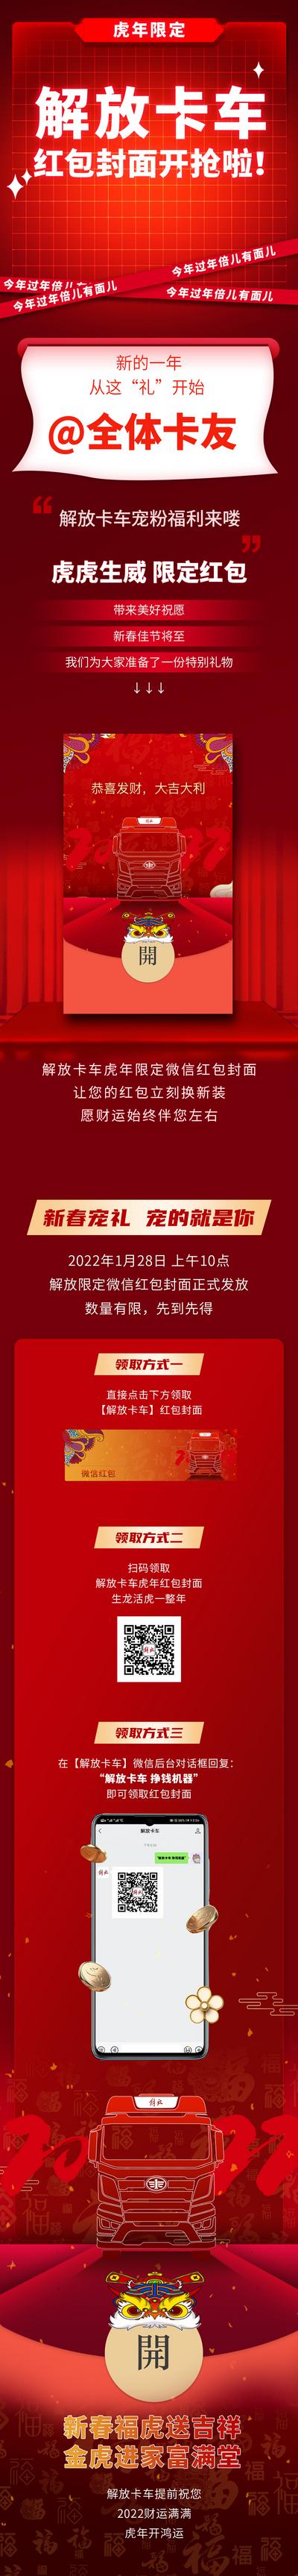 南门网 海报 长图 中国传统节日 新年 卡车 汽车 活动 红包 